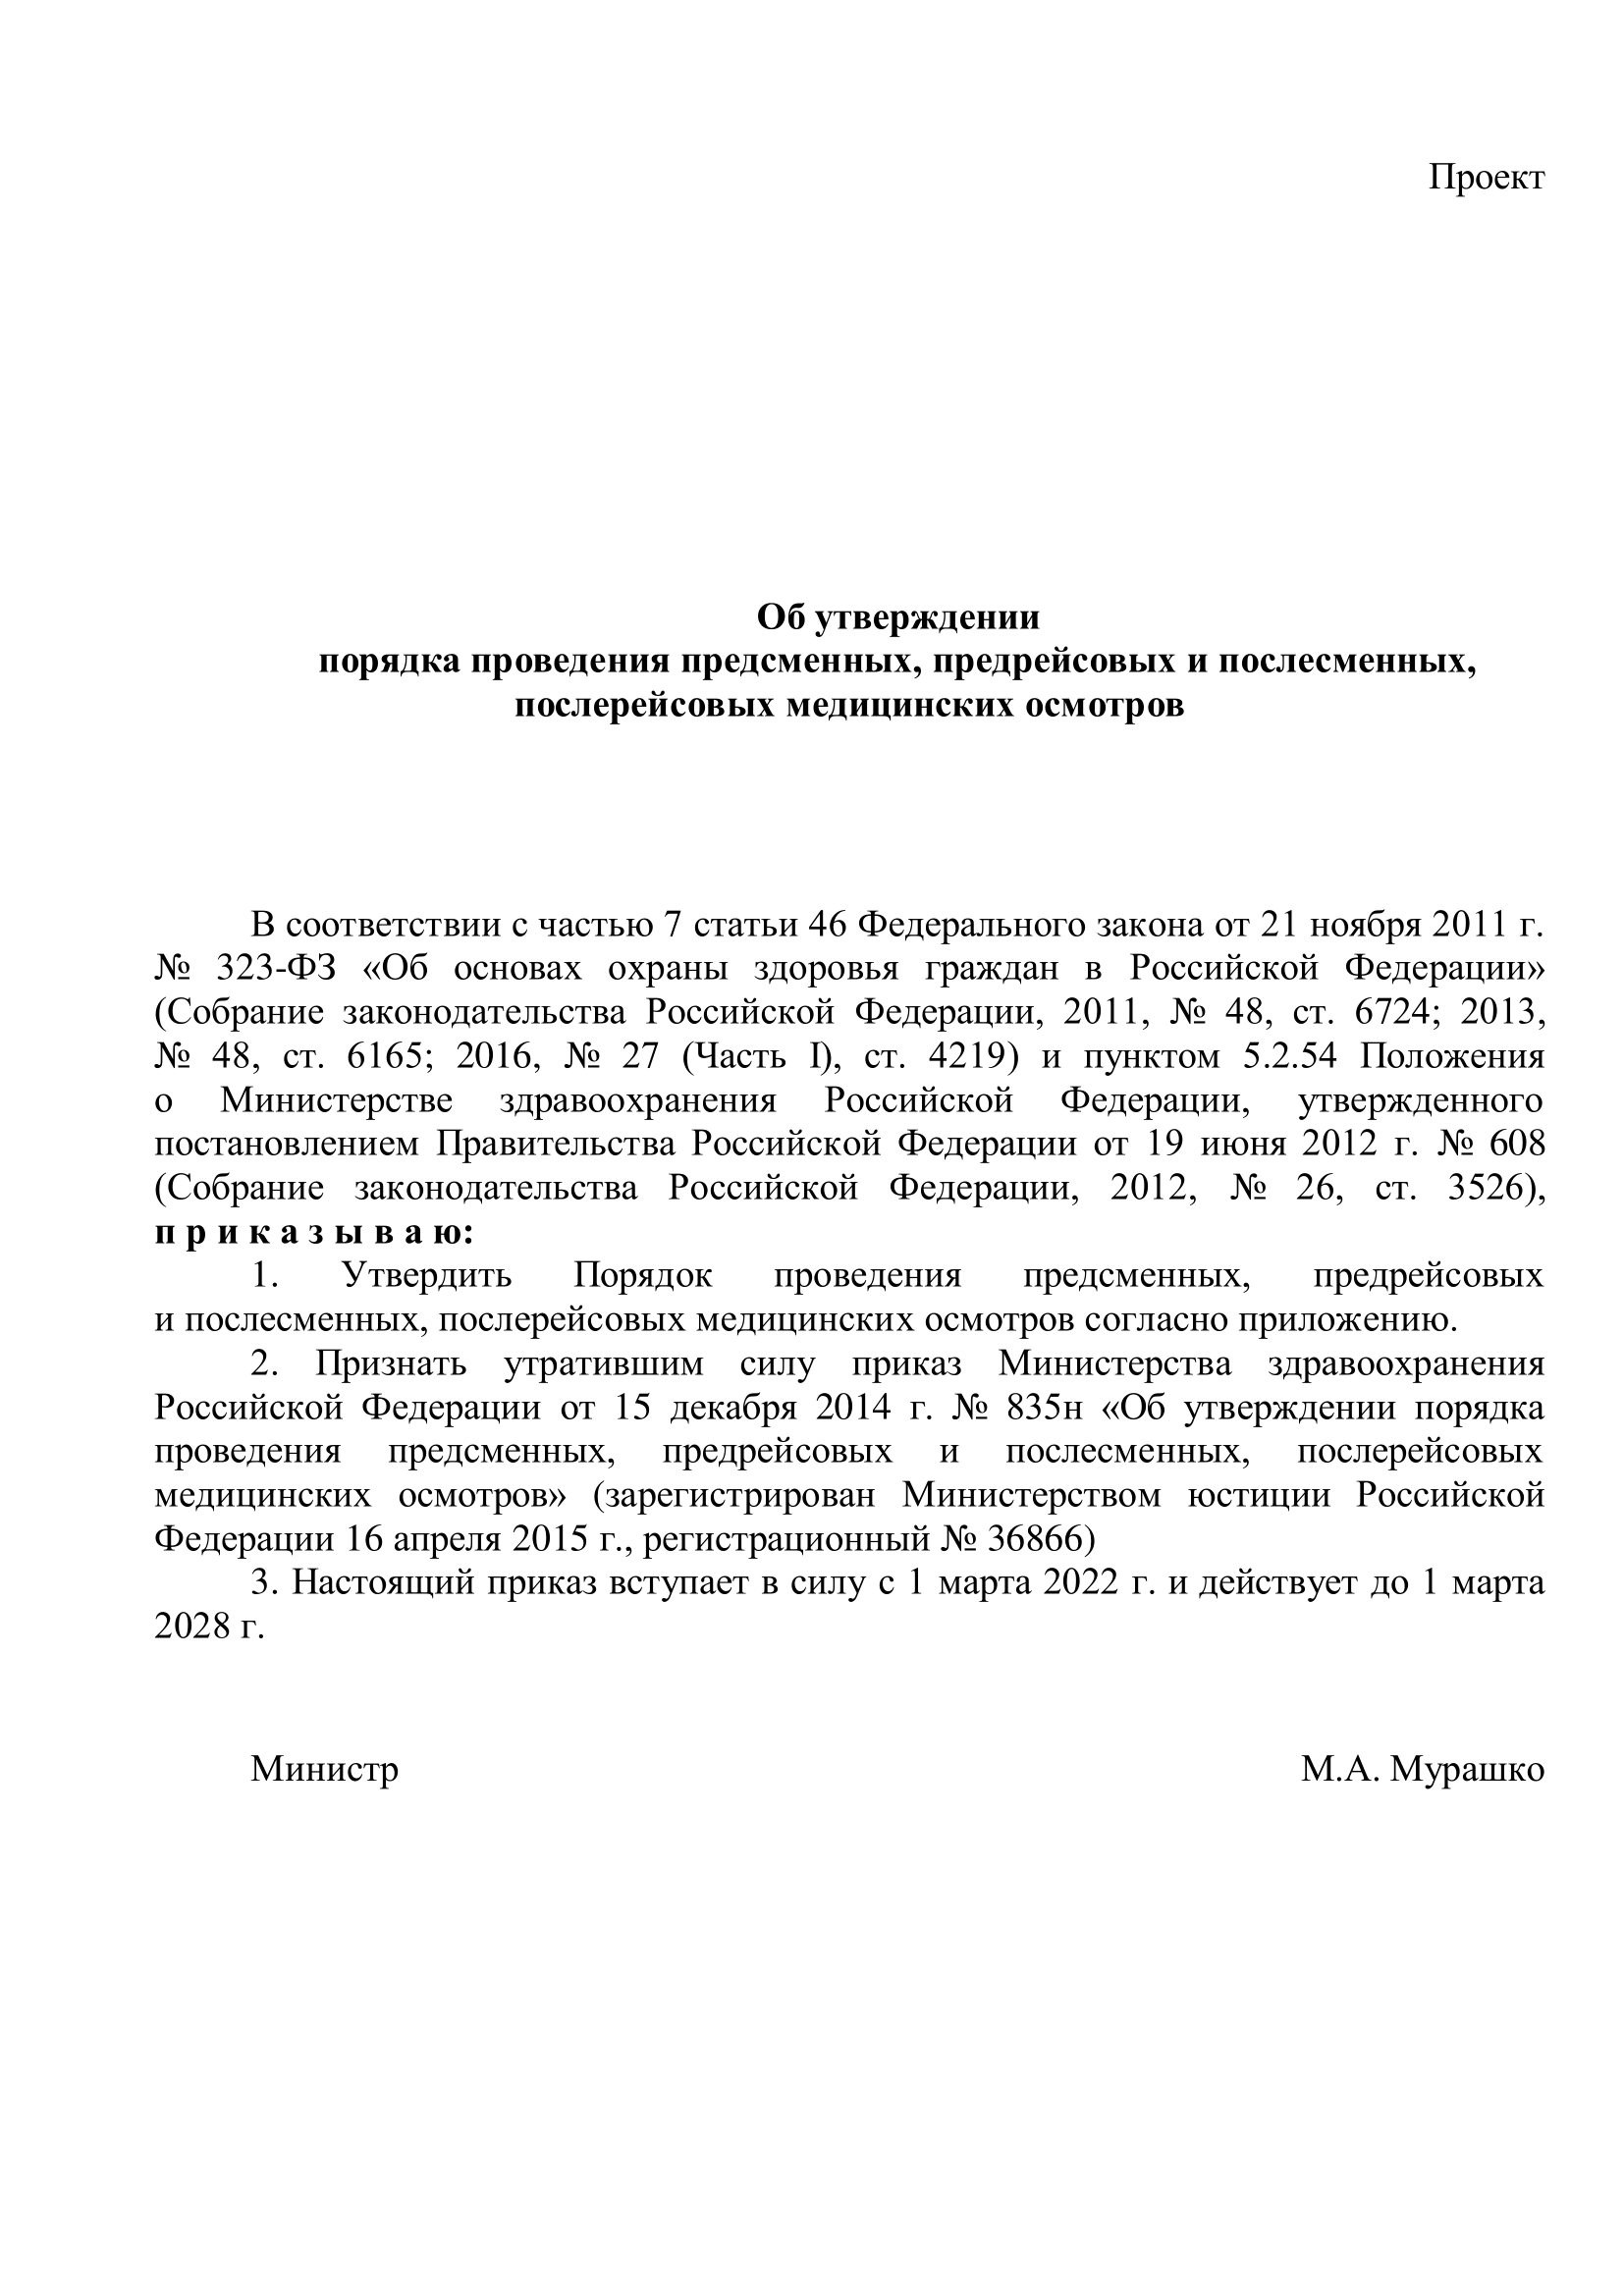 Лицензии РФ для медицинского осмотра водителей